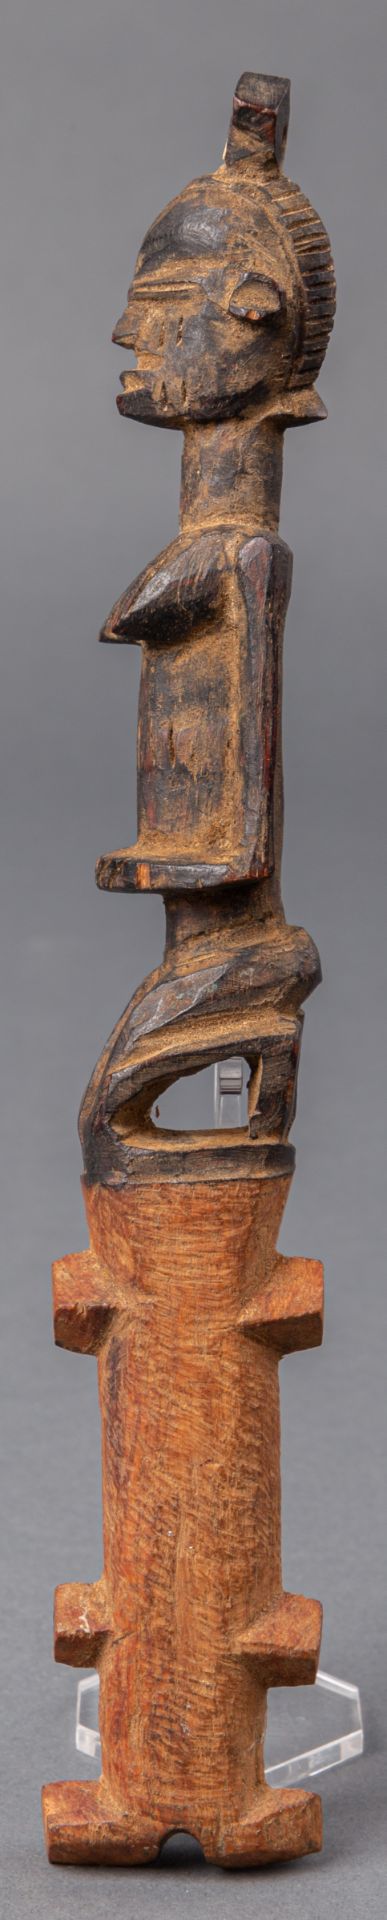 Signalflöte, Dogon (Mali), E. 19./A. 20. Jh. - Image 2 of 2